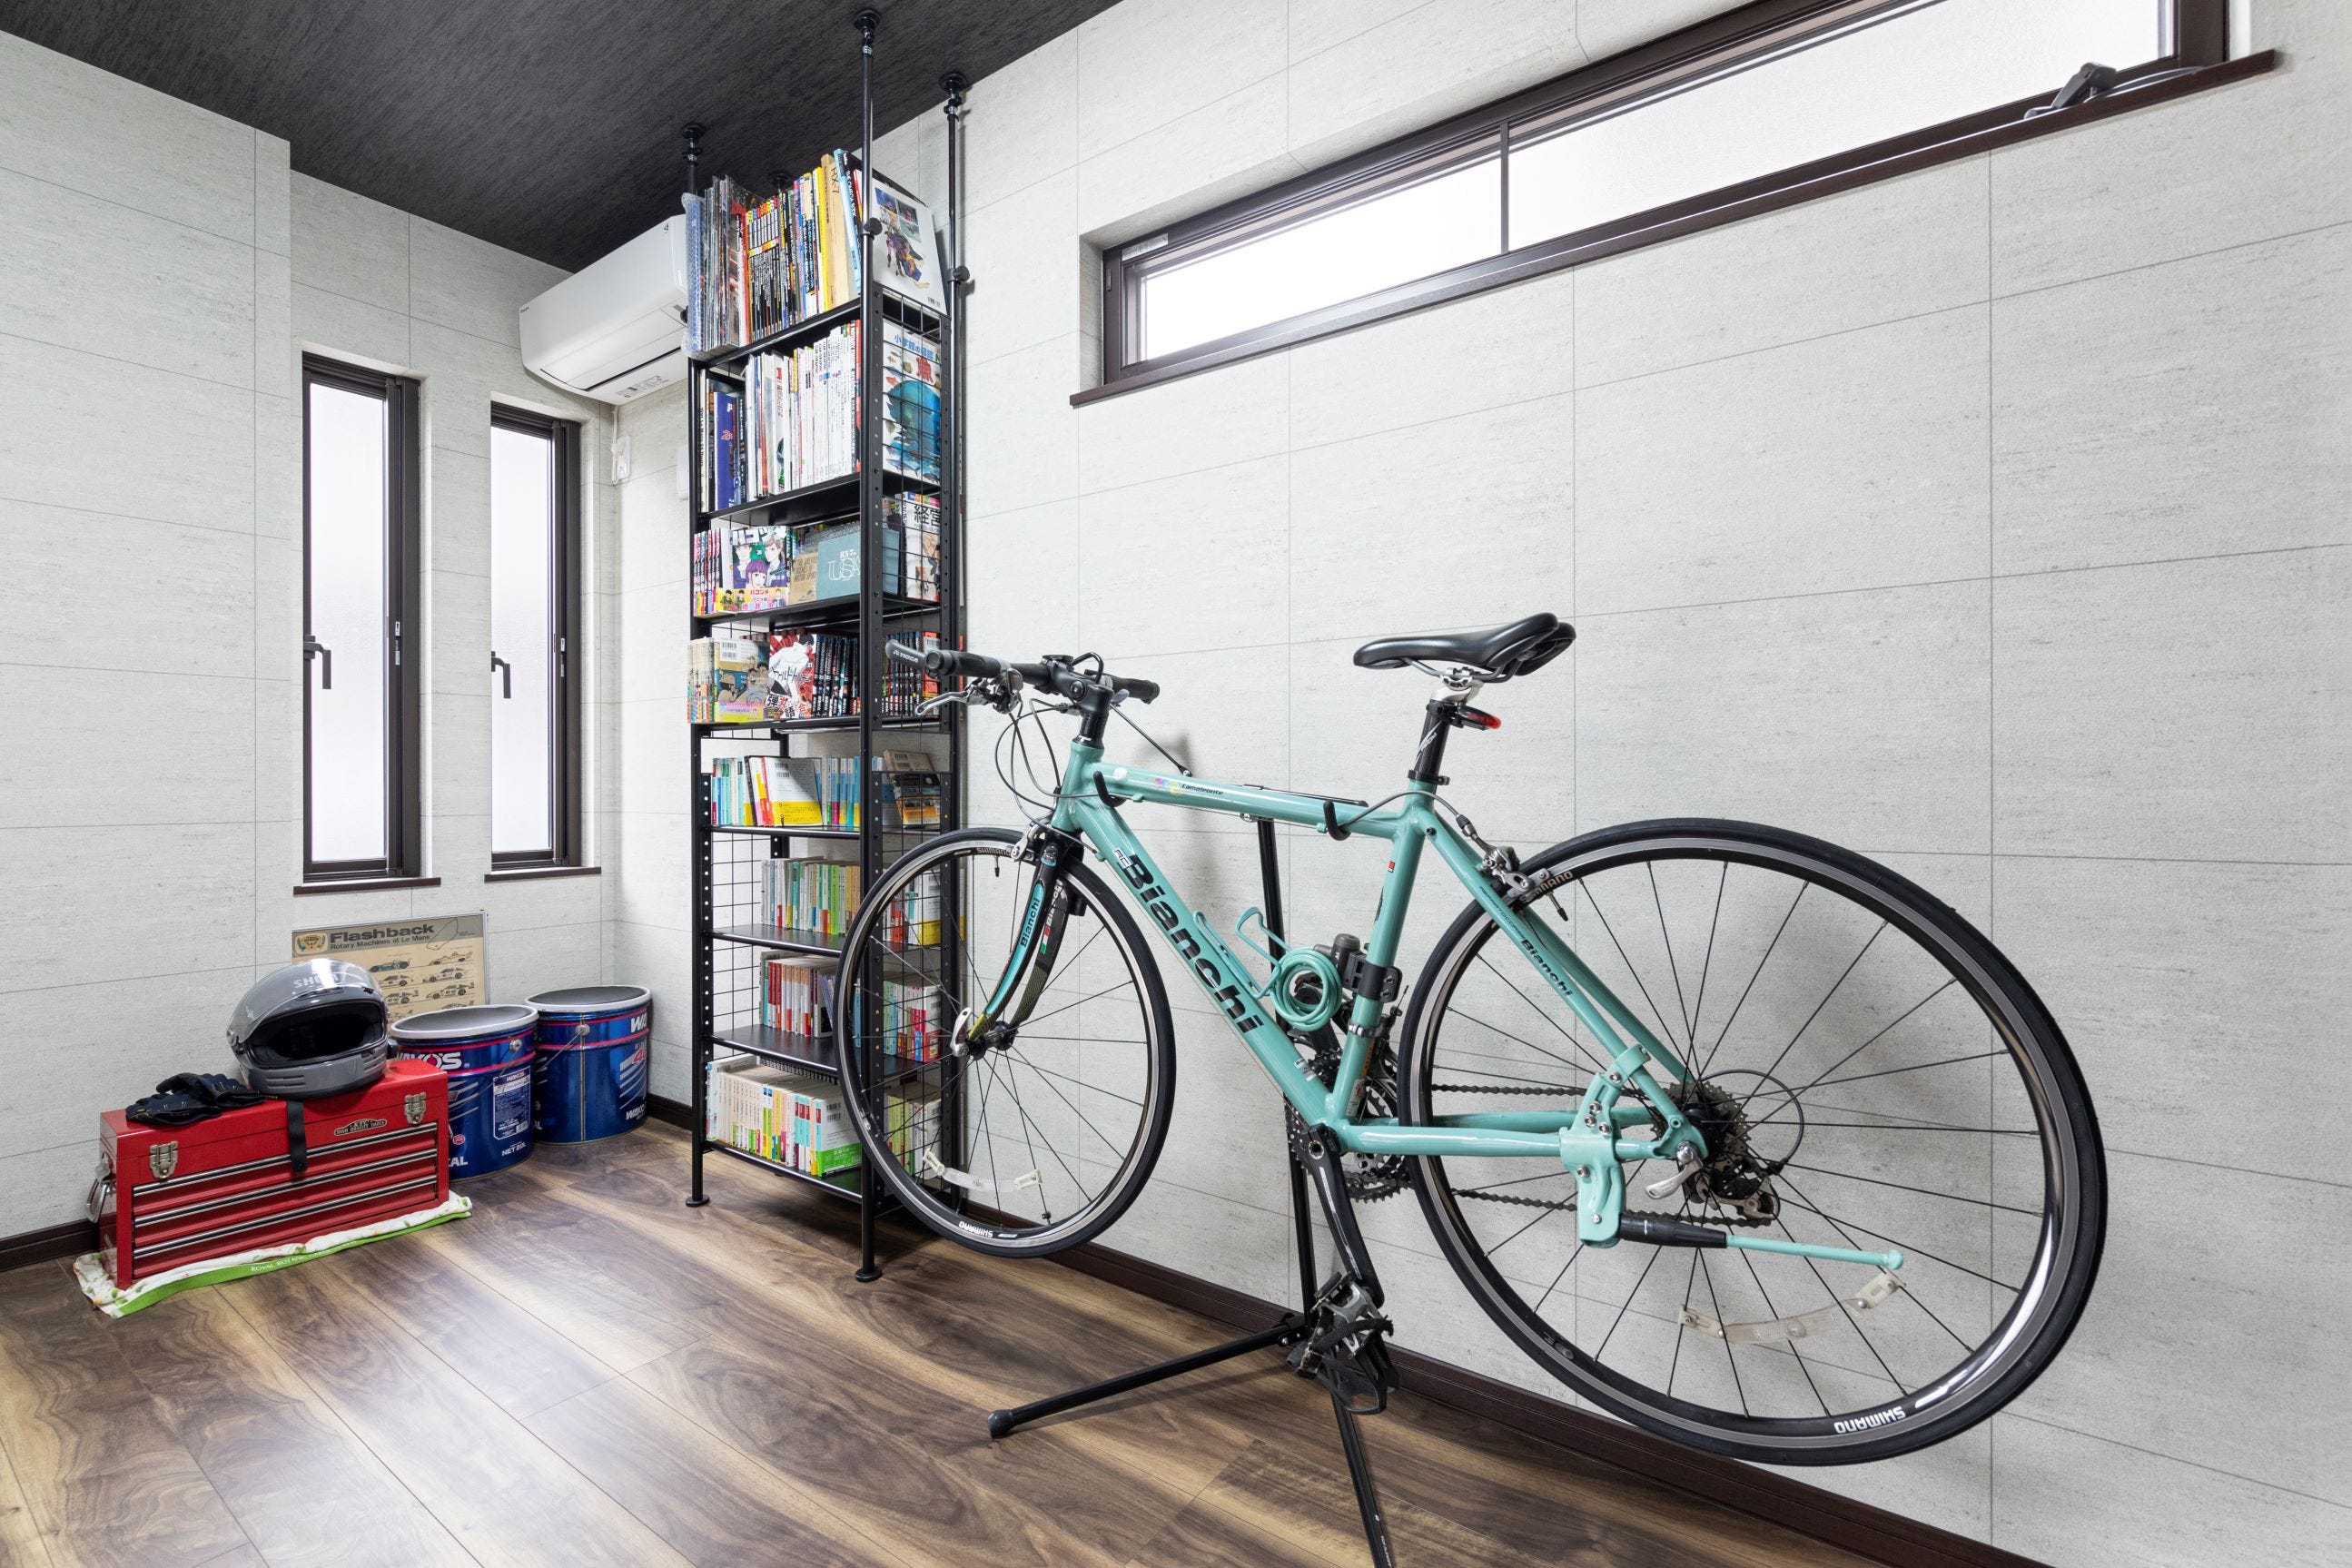 ガレージ横の洋室はA様がゆっくり自分時間を楽しむスペース。
愛車やバイクを整備する際に使用する工具や、趣味の漫画や雑誌が並んでいます。
お気に入りの自転車は室内に置き、間近で眺められるようにしました。